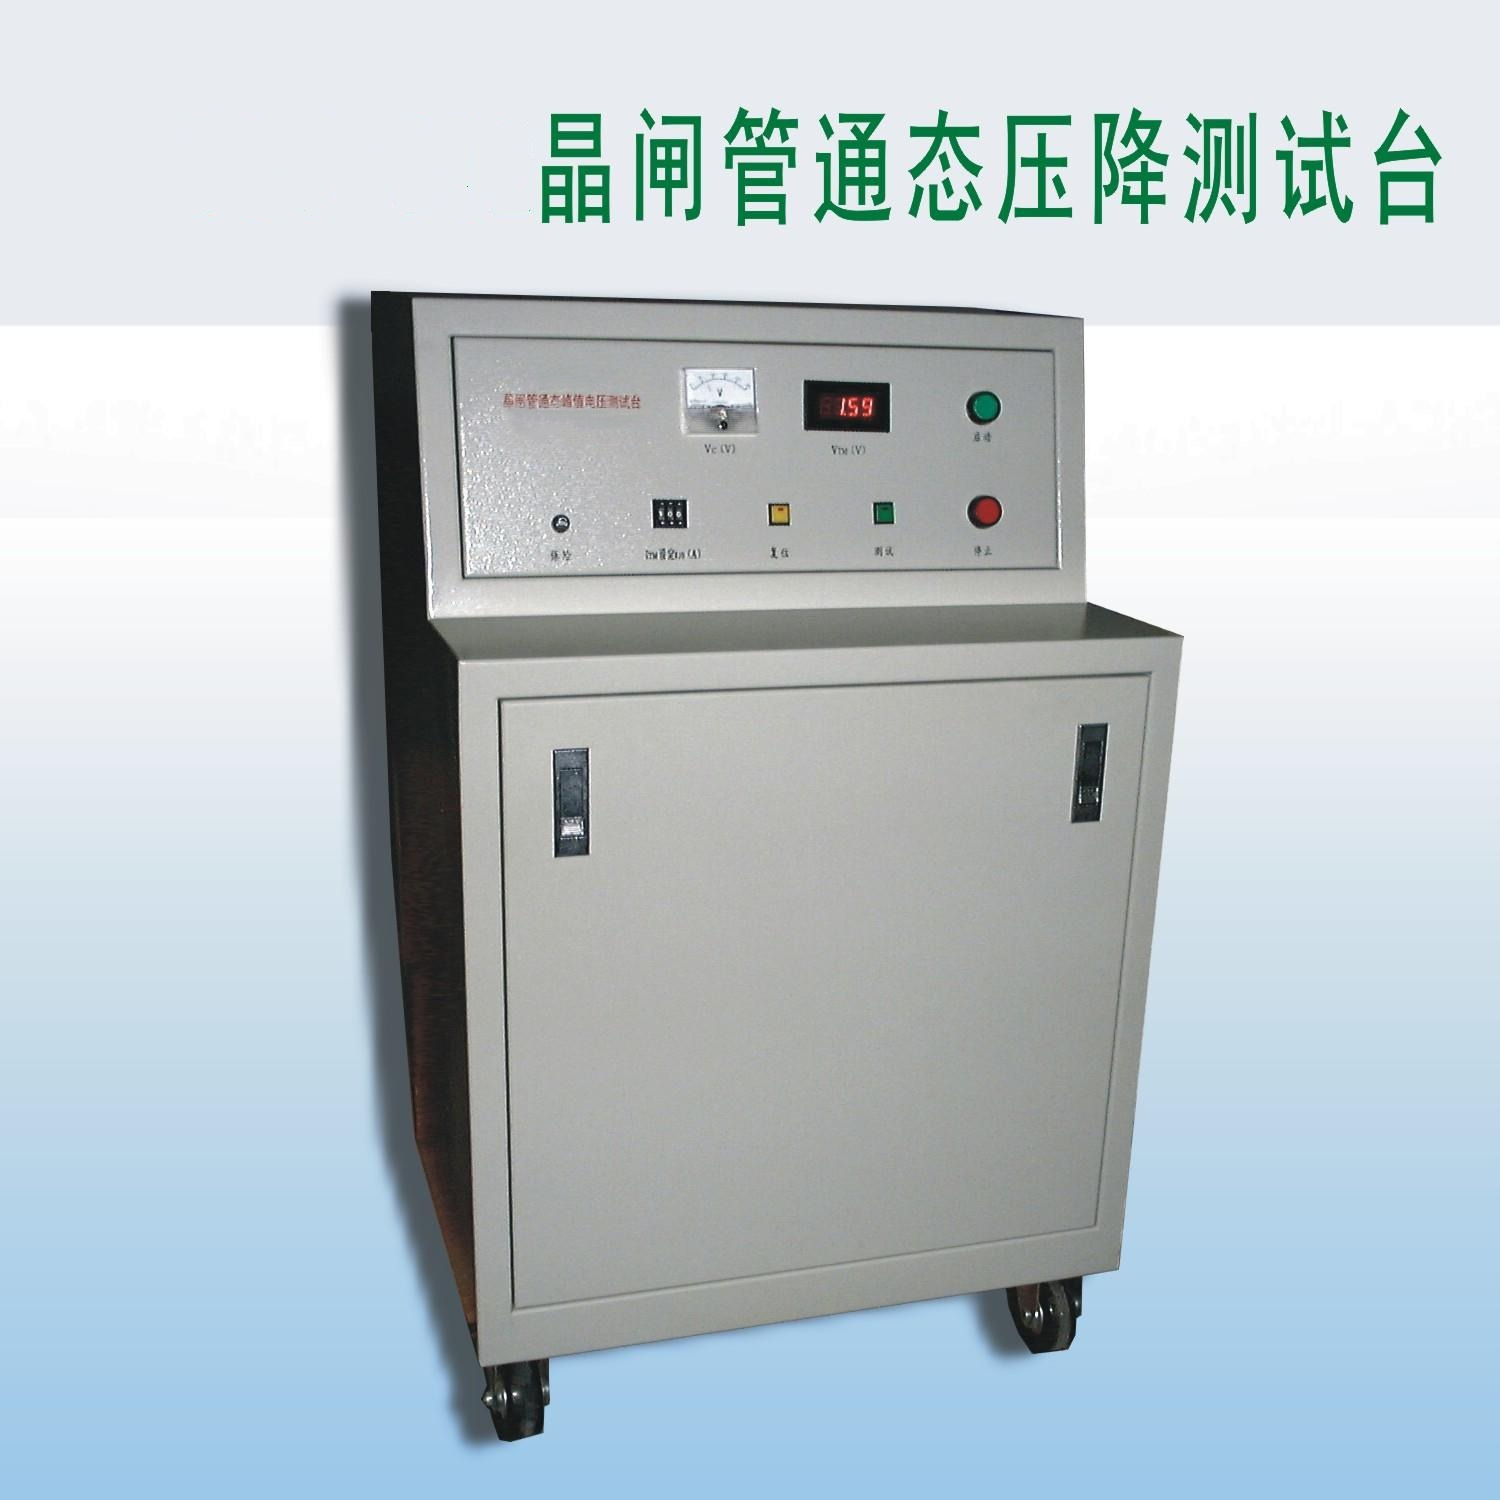 晶闸管、整流二极管通态峰值电压测试台BJ12-DBC-012